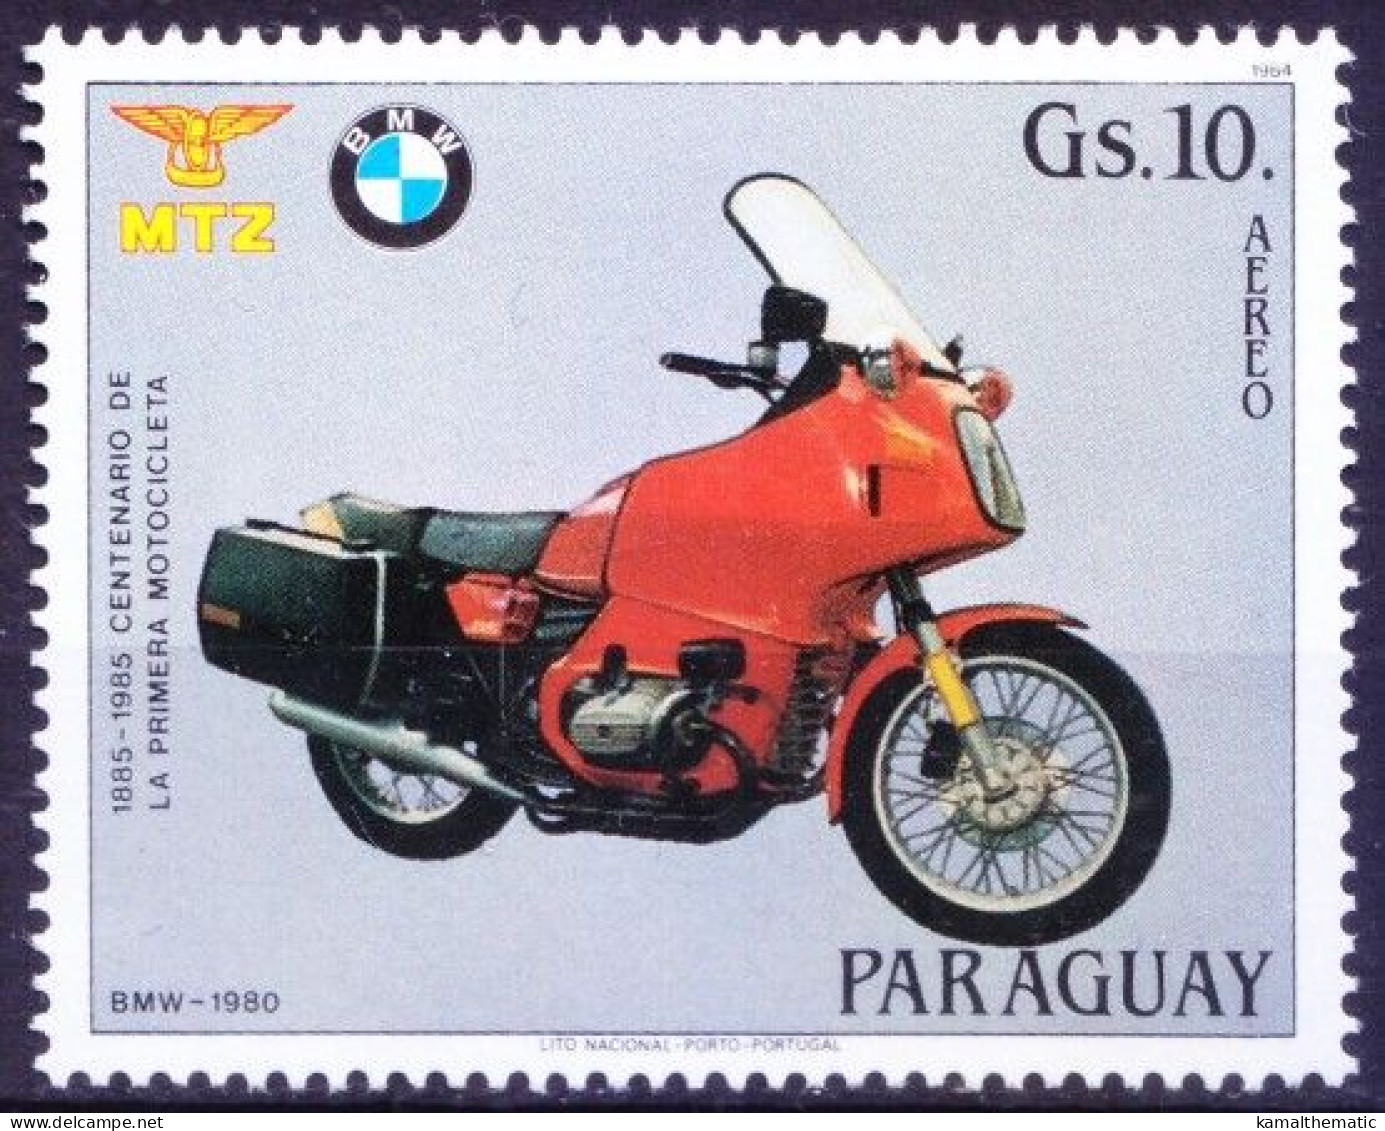 Paraguay 1984 MNH, German BMW Motorrad Motorcycle - Motorbikes